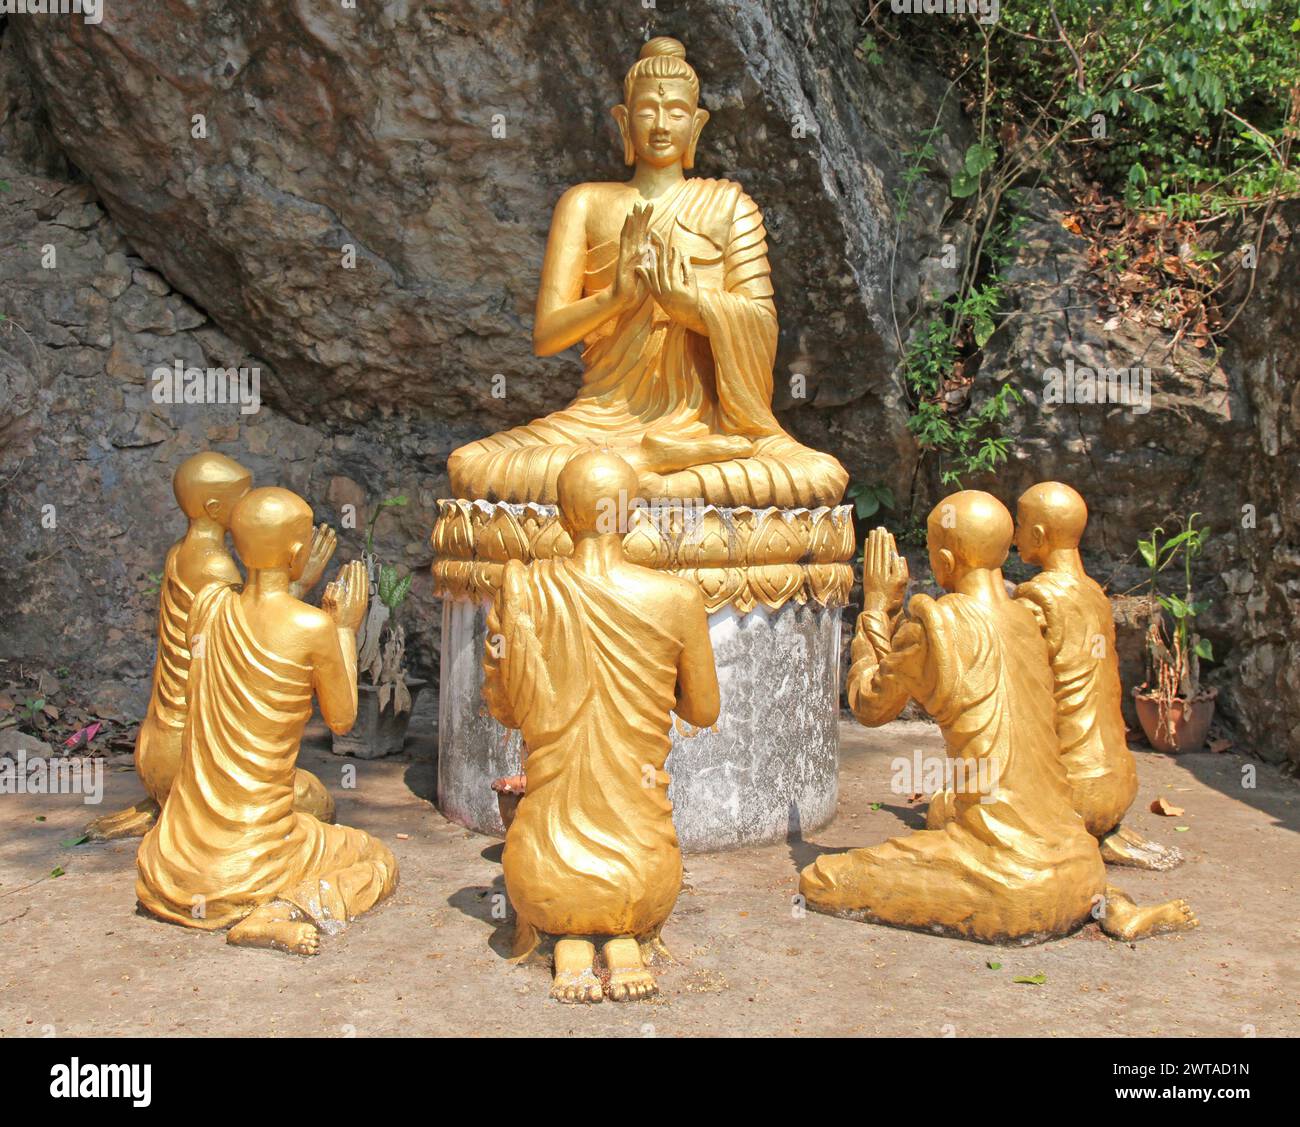 Buddha-Statue mit Mönchen, die beten. Der Buddhismus ist ein integraler Bestandteil des Lebens in Luang Prabang, der zum UNESCO-Weltkulturerbe gehört Stockfoto